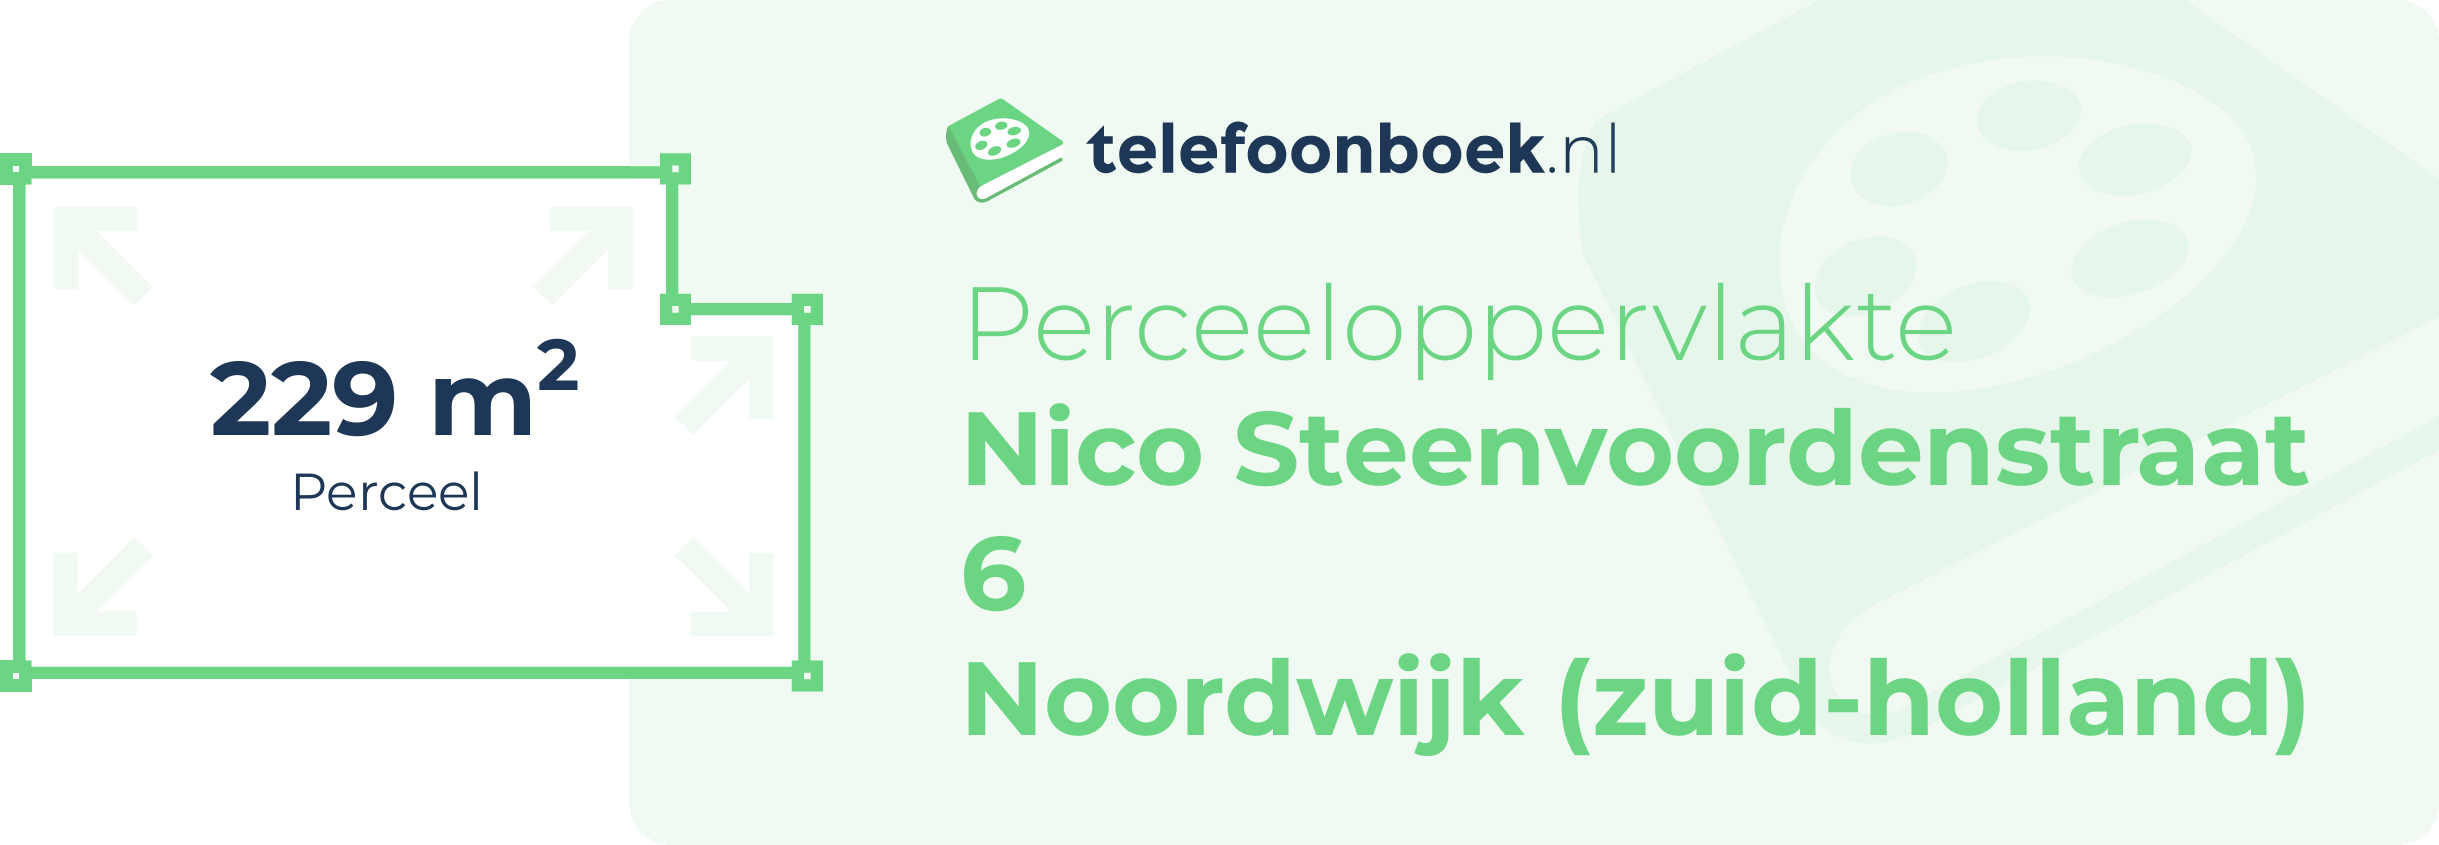 Perceeloppervlakte Nico Steenvoordenstraat 6 Noordwijk (Zuid-Holland)